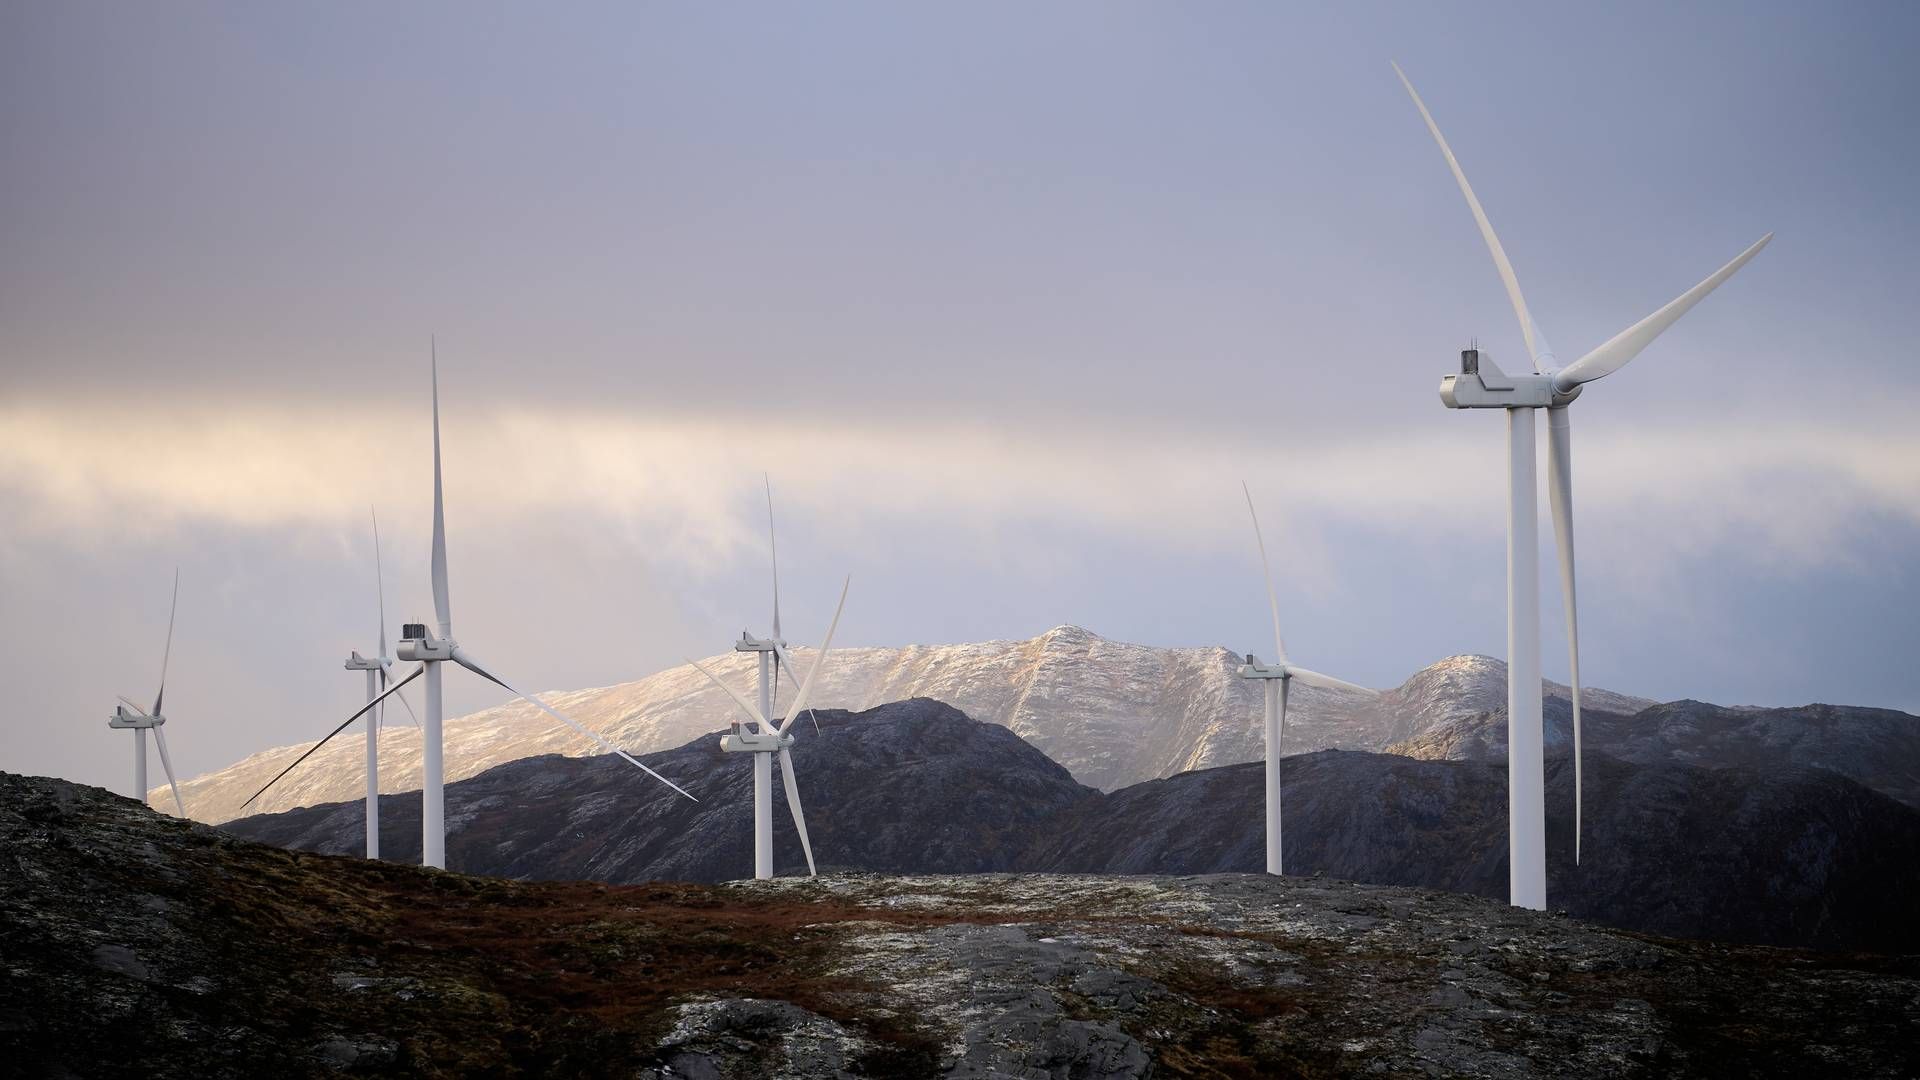 ØDELAGT: Vindstyrker opptil 54,4 sekundmeter har gått hardt utover vindturbiner som normalt stenger produksjonen på cirka 25 m/s. | Foto: Ole Martin Wold / NTB